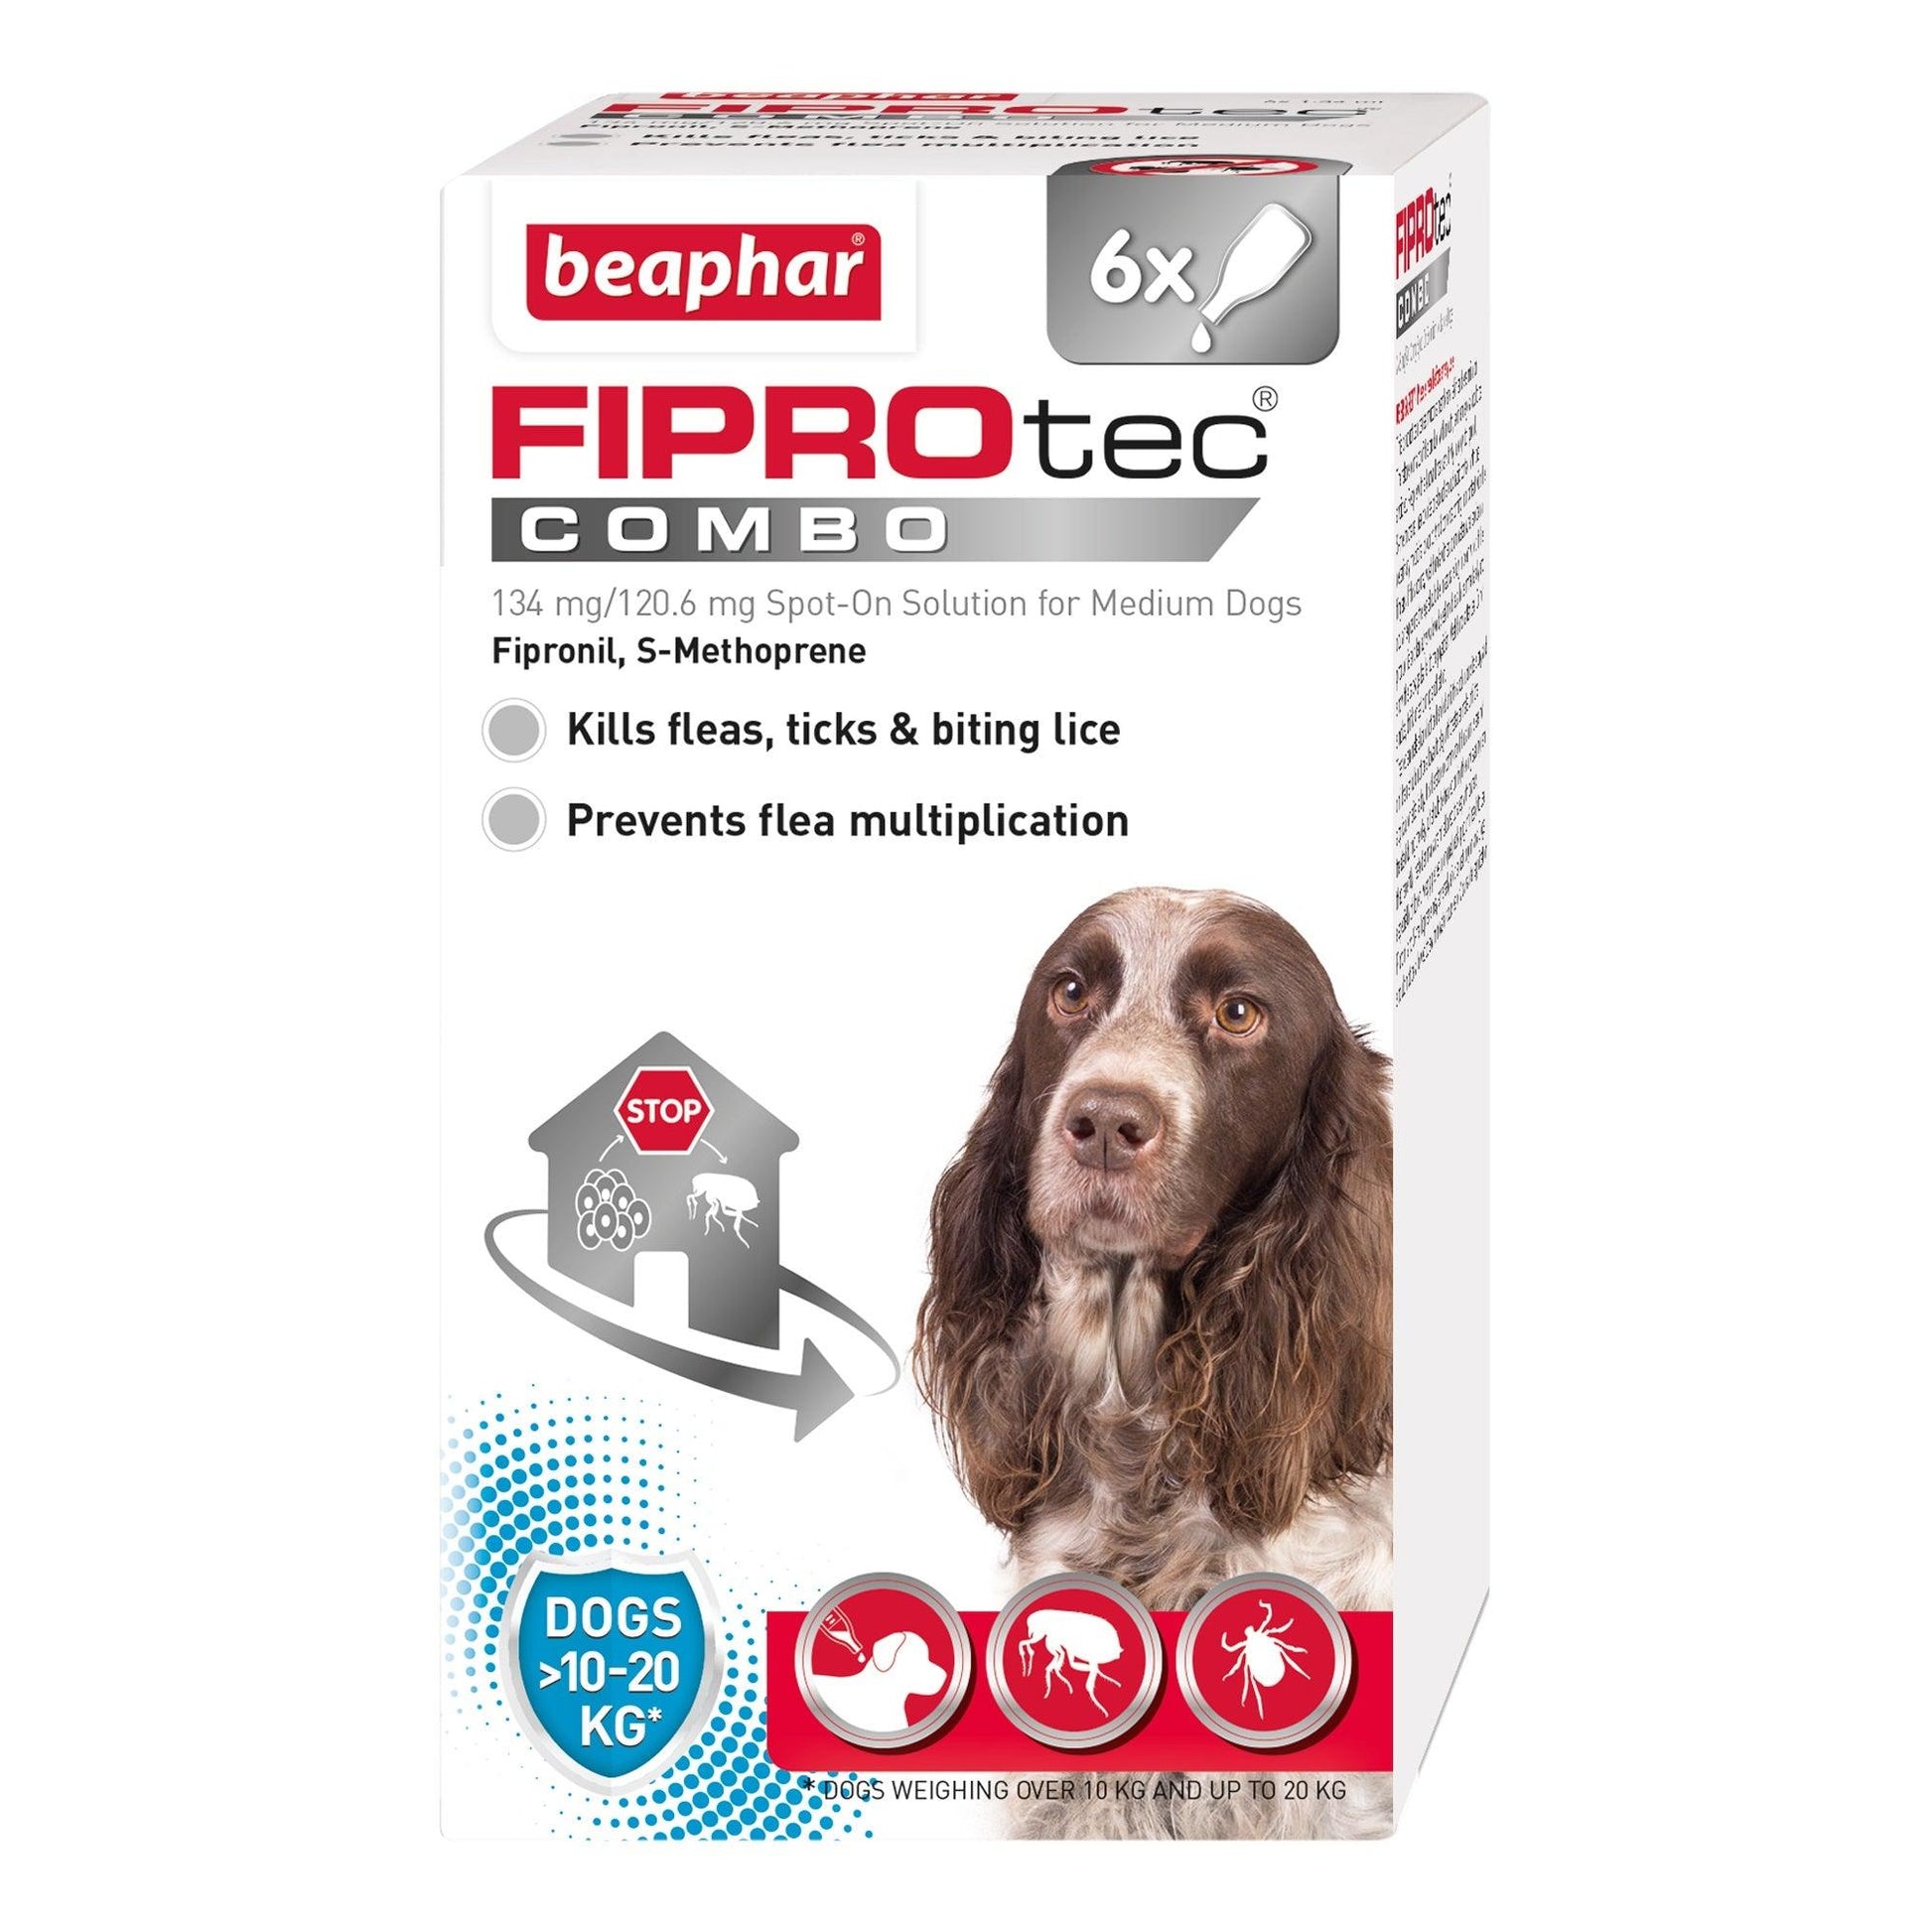 Beaphar FIPROtec COMBO Med Dog 6 pip x4 - North East Pet Shop Beaphar